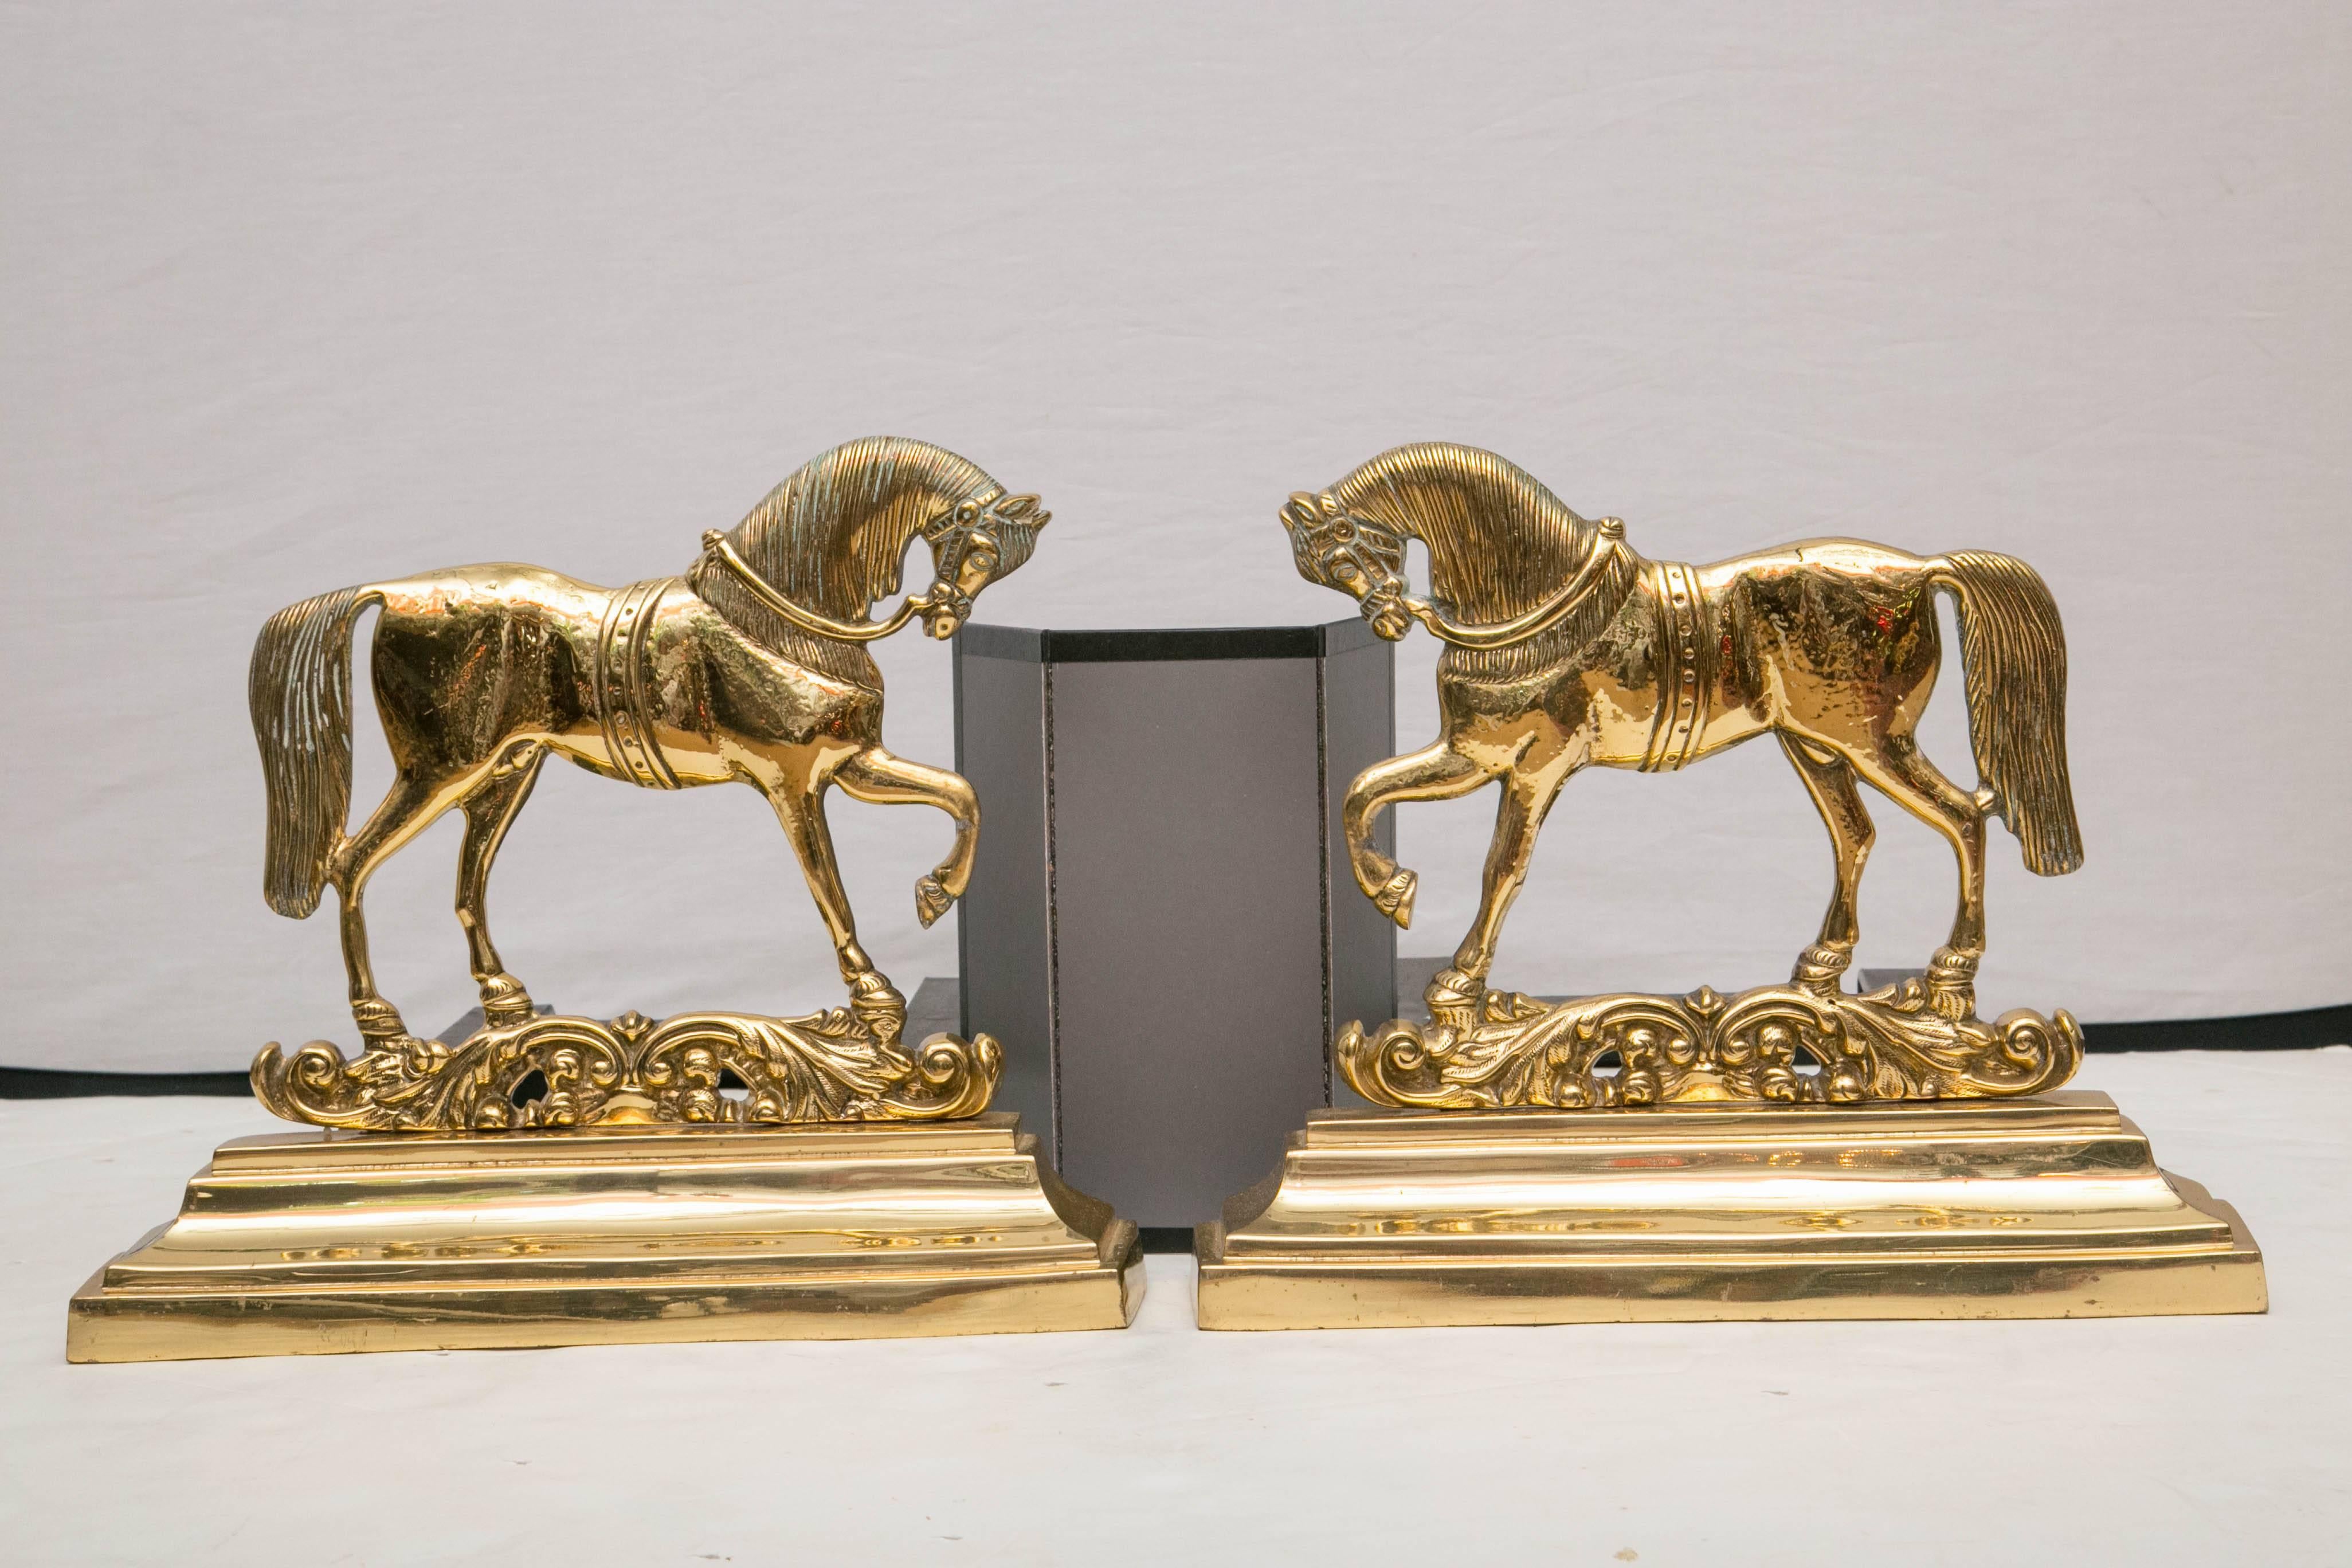 Ein spiegelbildliches Paar Pferdefiguren aus Messing auf dekorativen Sockeln, die an schwarzen Eisenstützen befestigt sind.